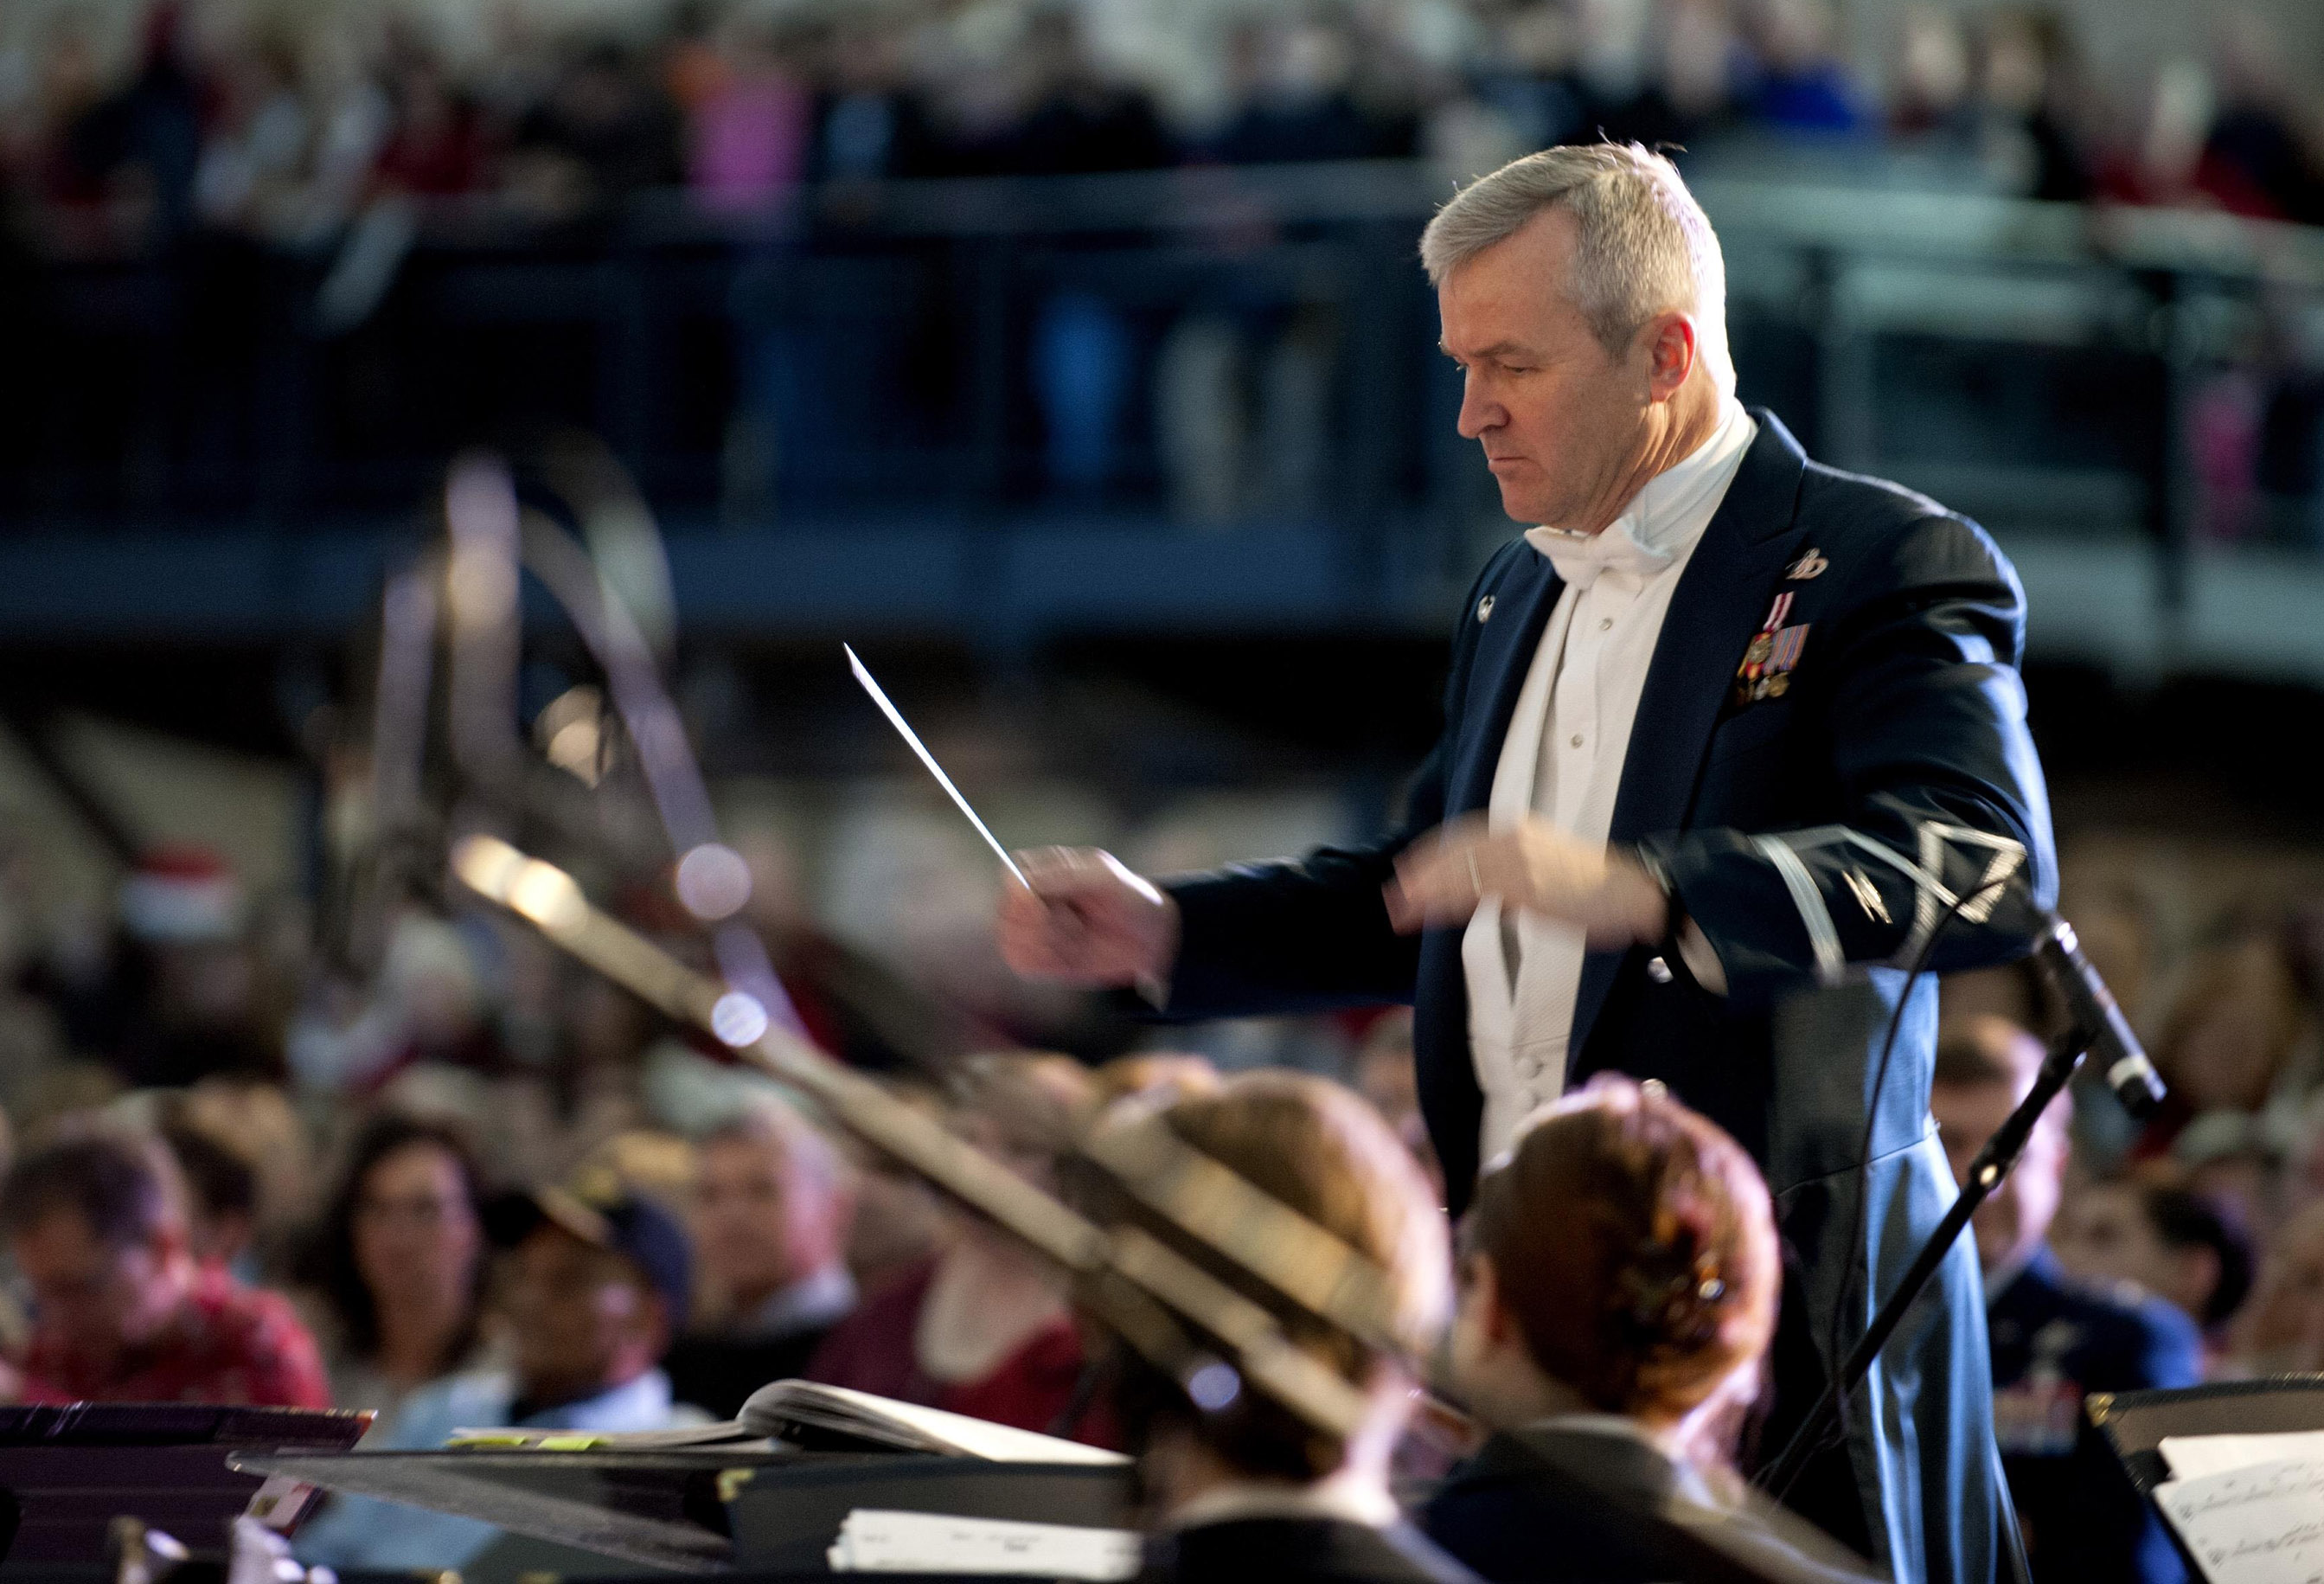 Maestro conducting